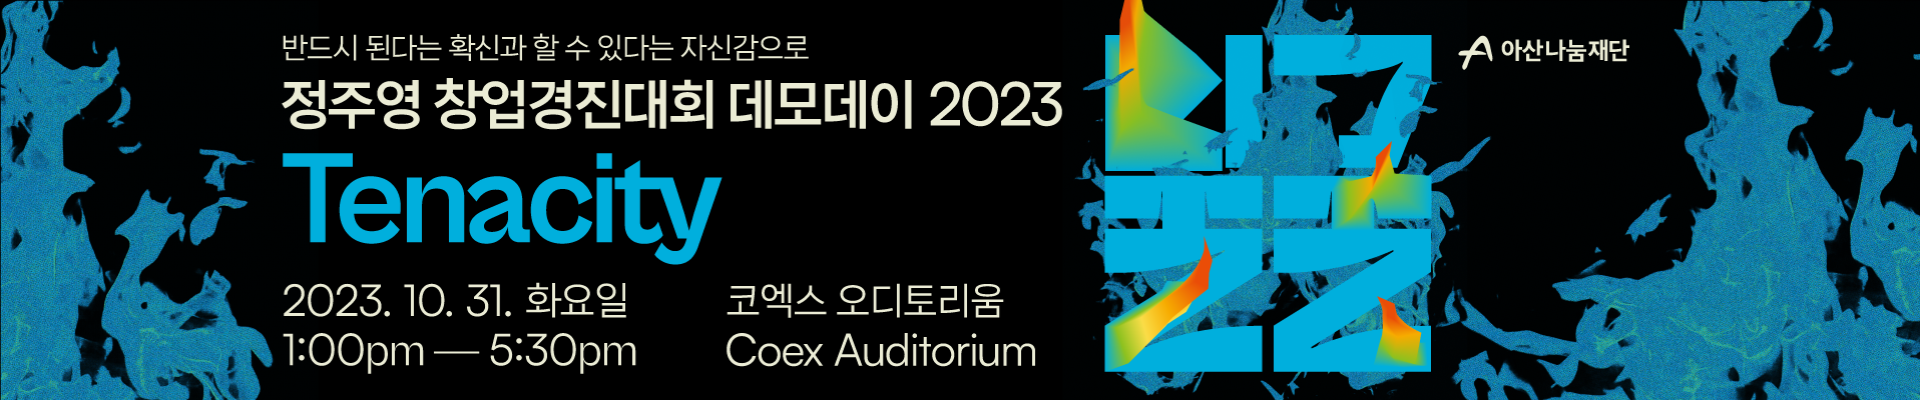 🔥정주영 창업경진대회 데모데이 2023, TENACITY